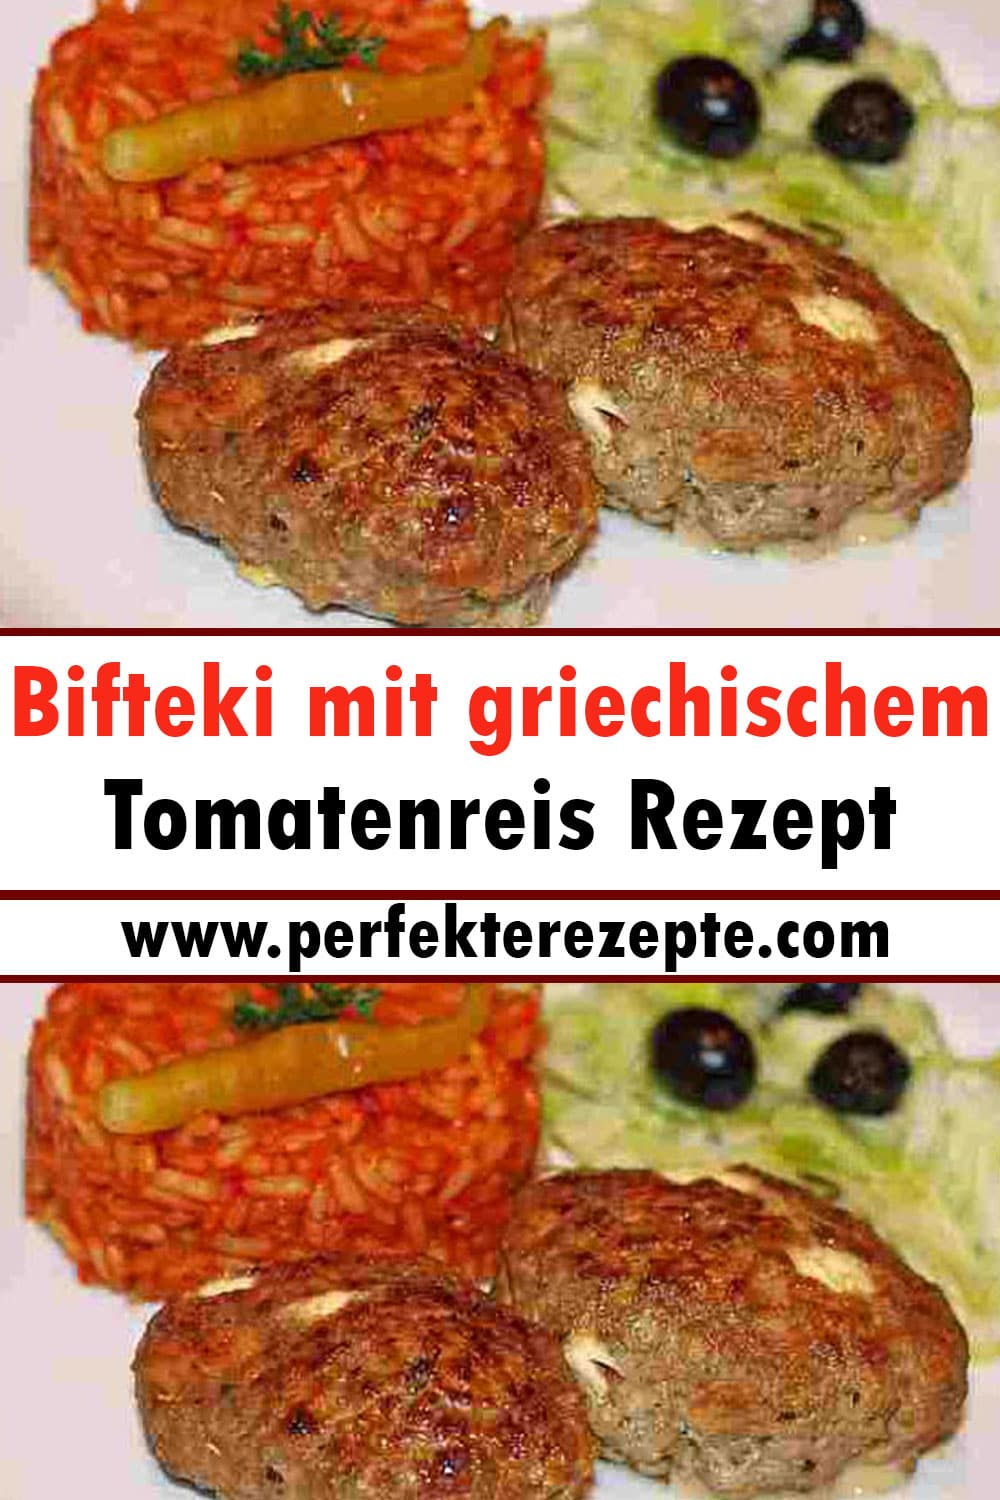 Bifteki mit Griechischem Tomatenreis Rezept